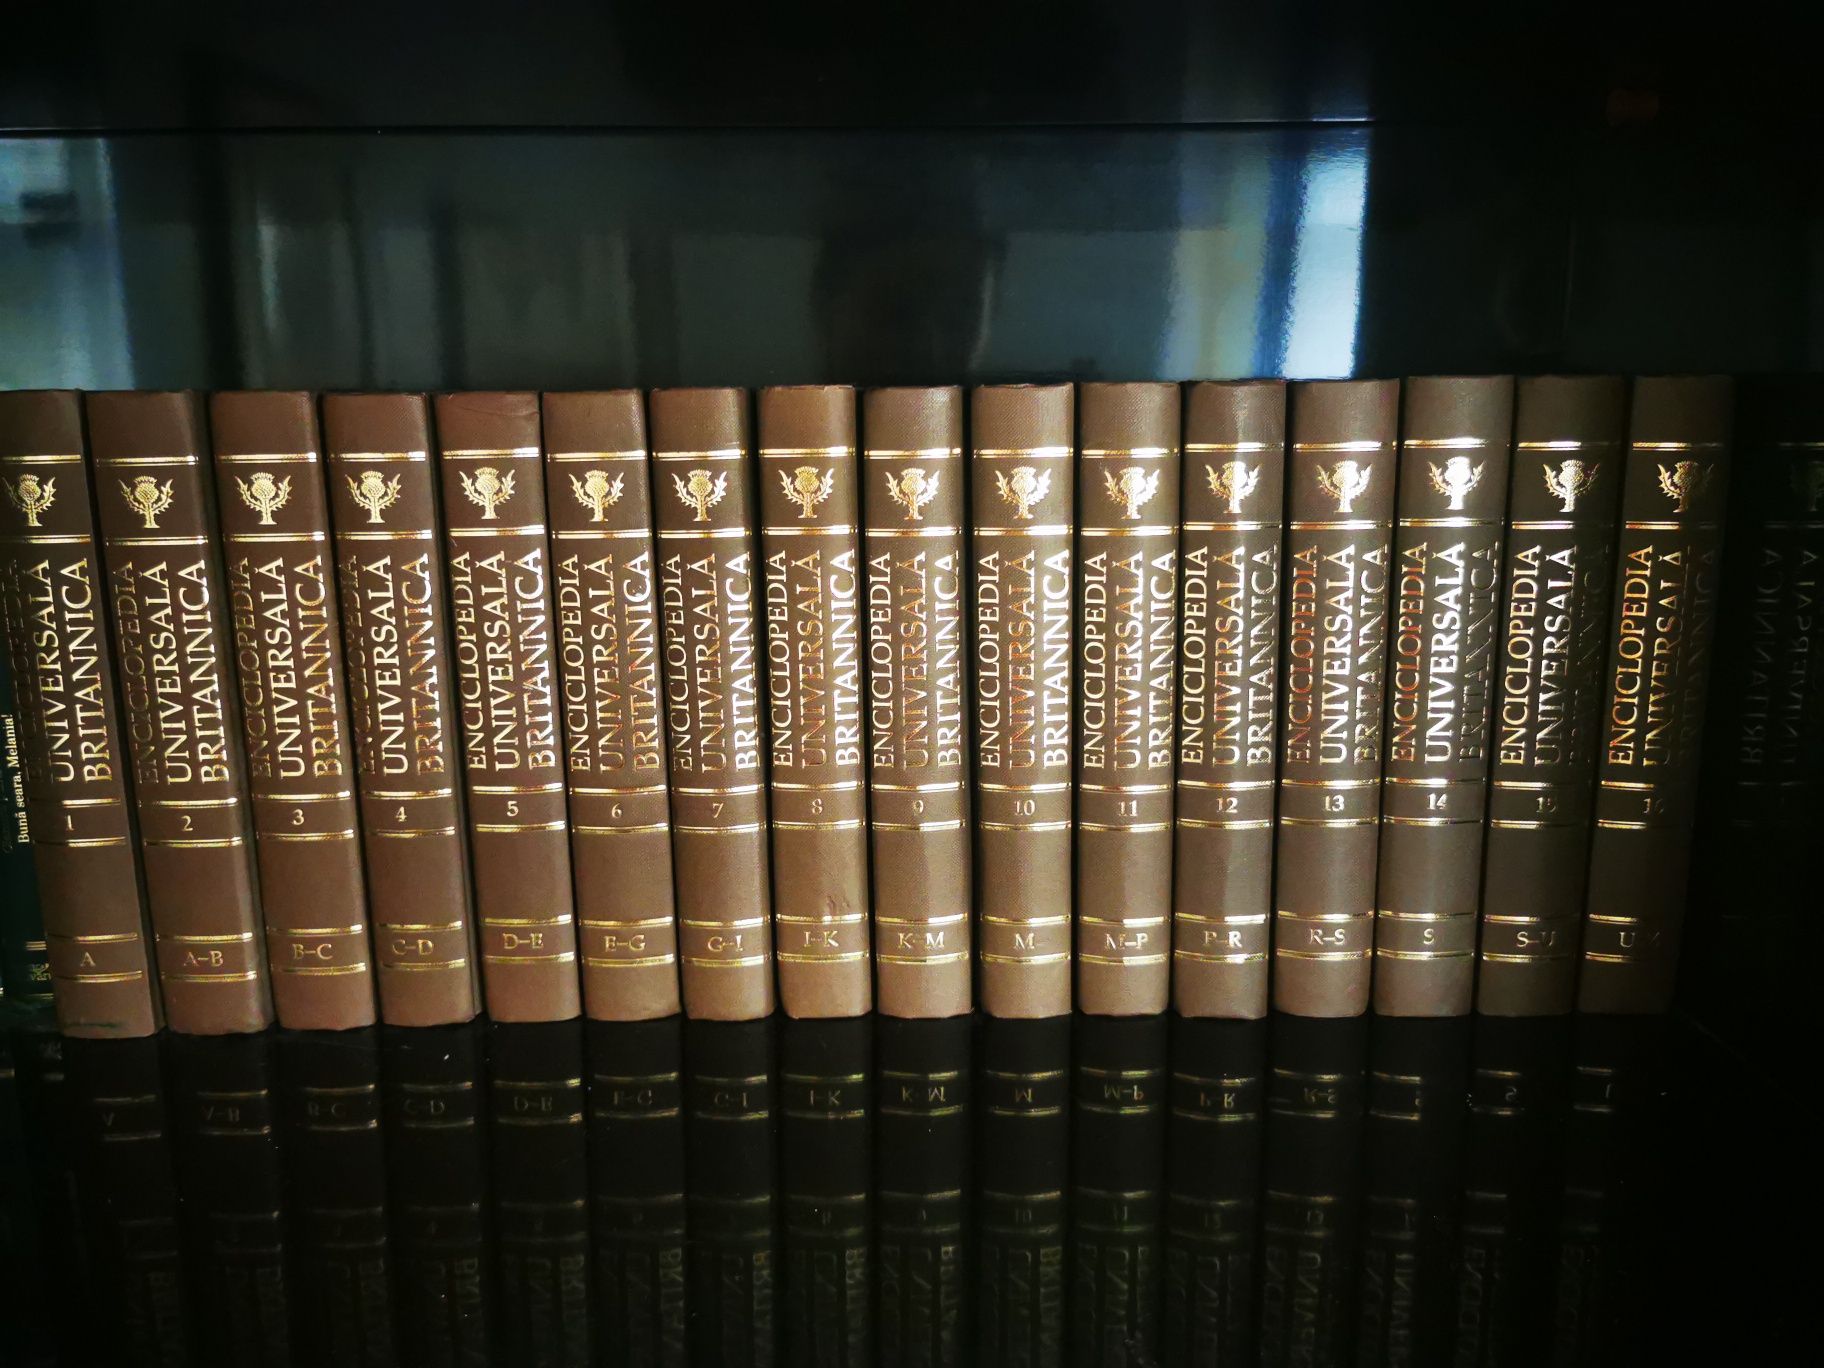 Colecție completă Enciclopedia Britannica